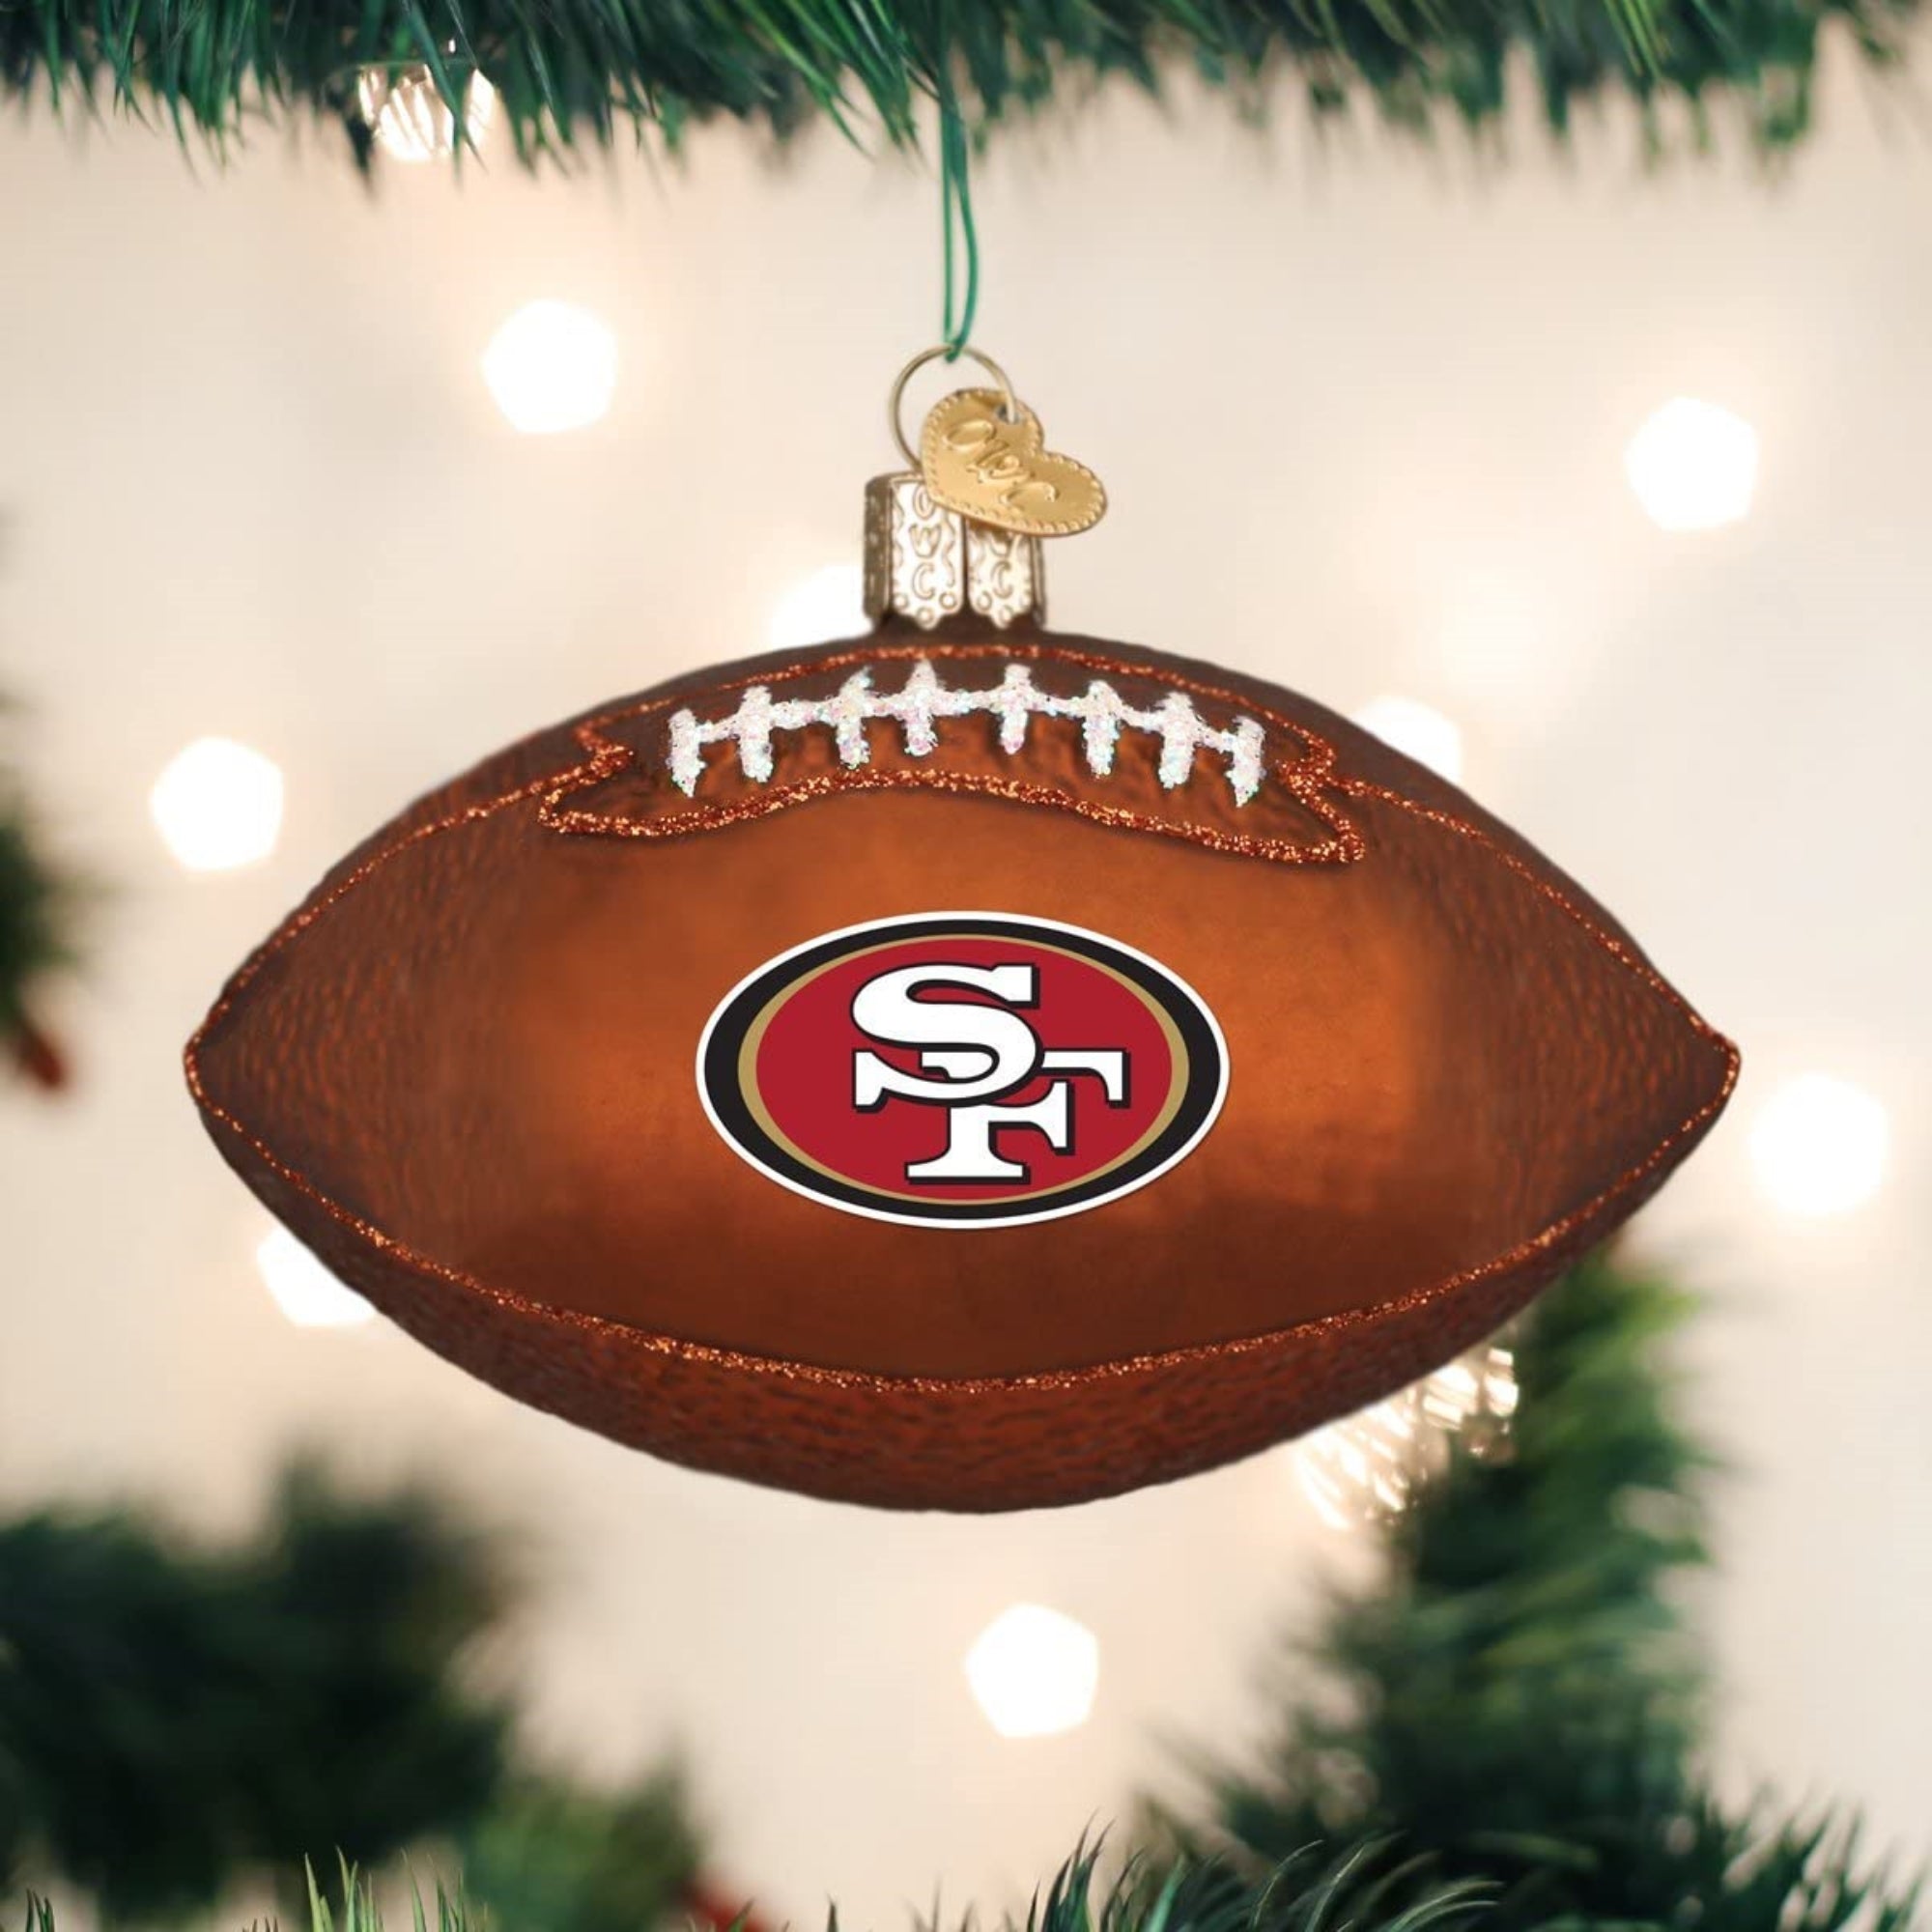 Old World Christmas San Francisco 49ers Football Ornament For Christmas Tree